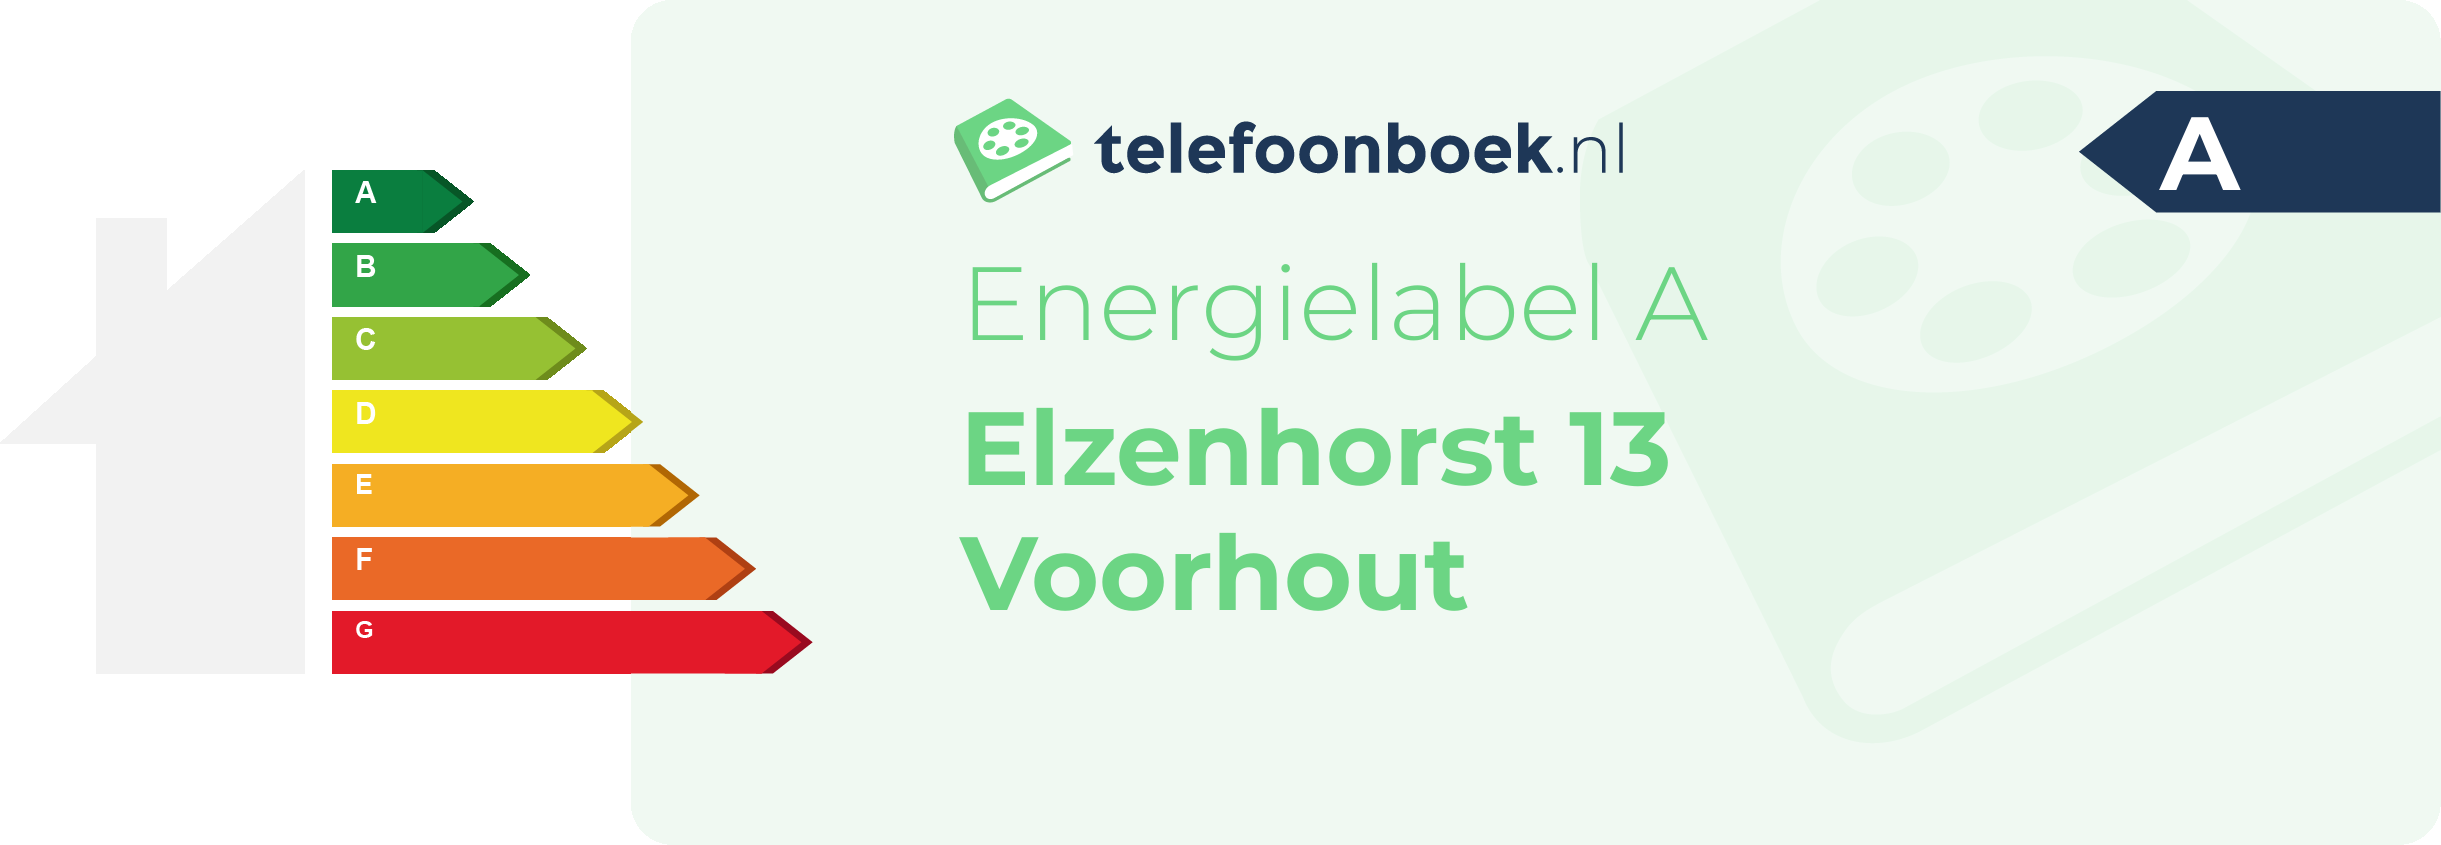 Energielabel Elzenhorst 13 Voorhout